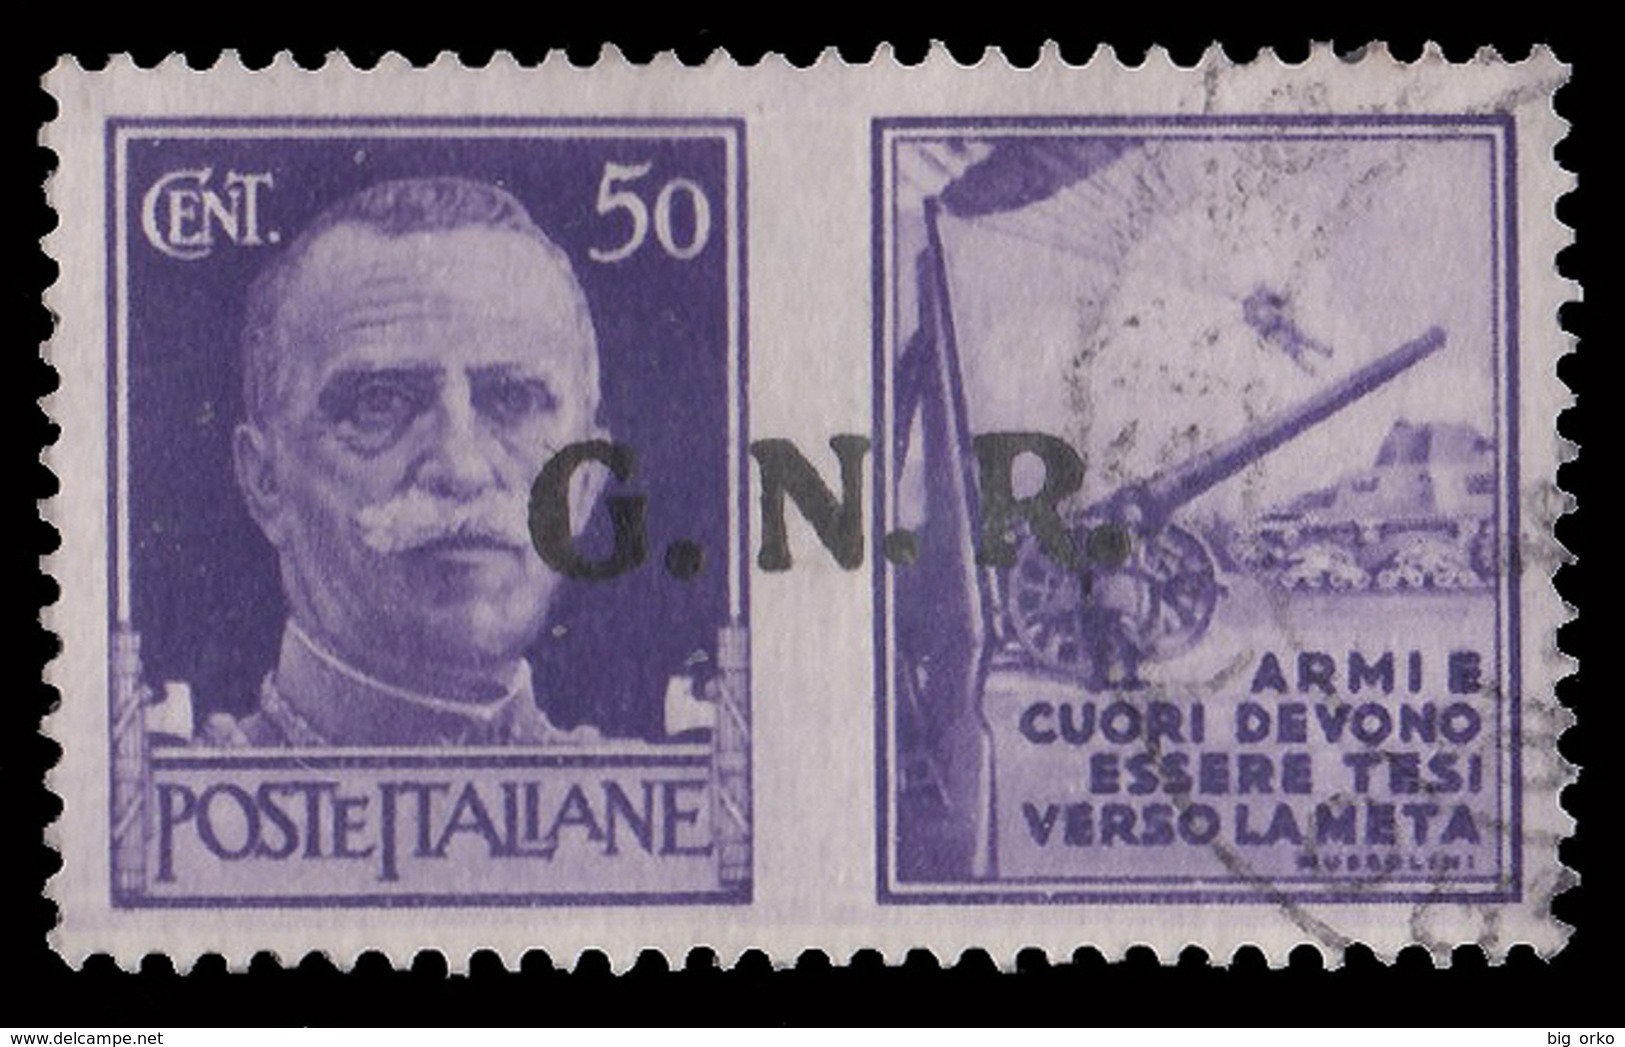 Italia: R.S.I. - PROPAGANDA DI GUERRA / G.N.R.: 50 C. Violetto (II - Esercito) - 1944 - Kriegspropaganda